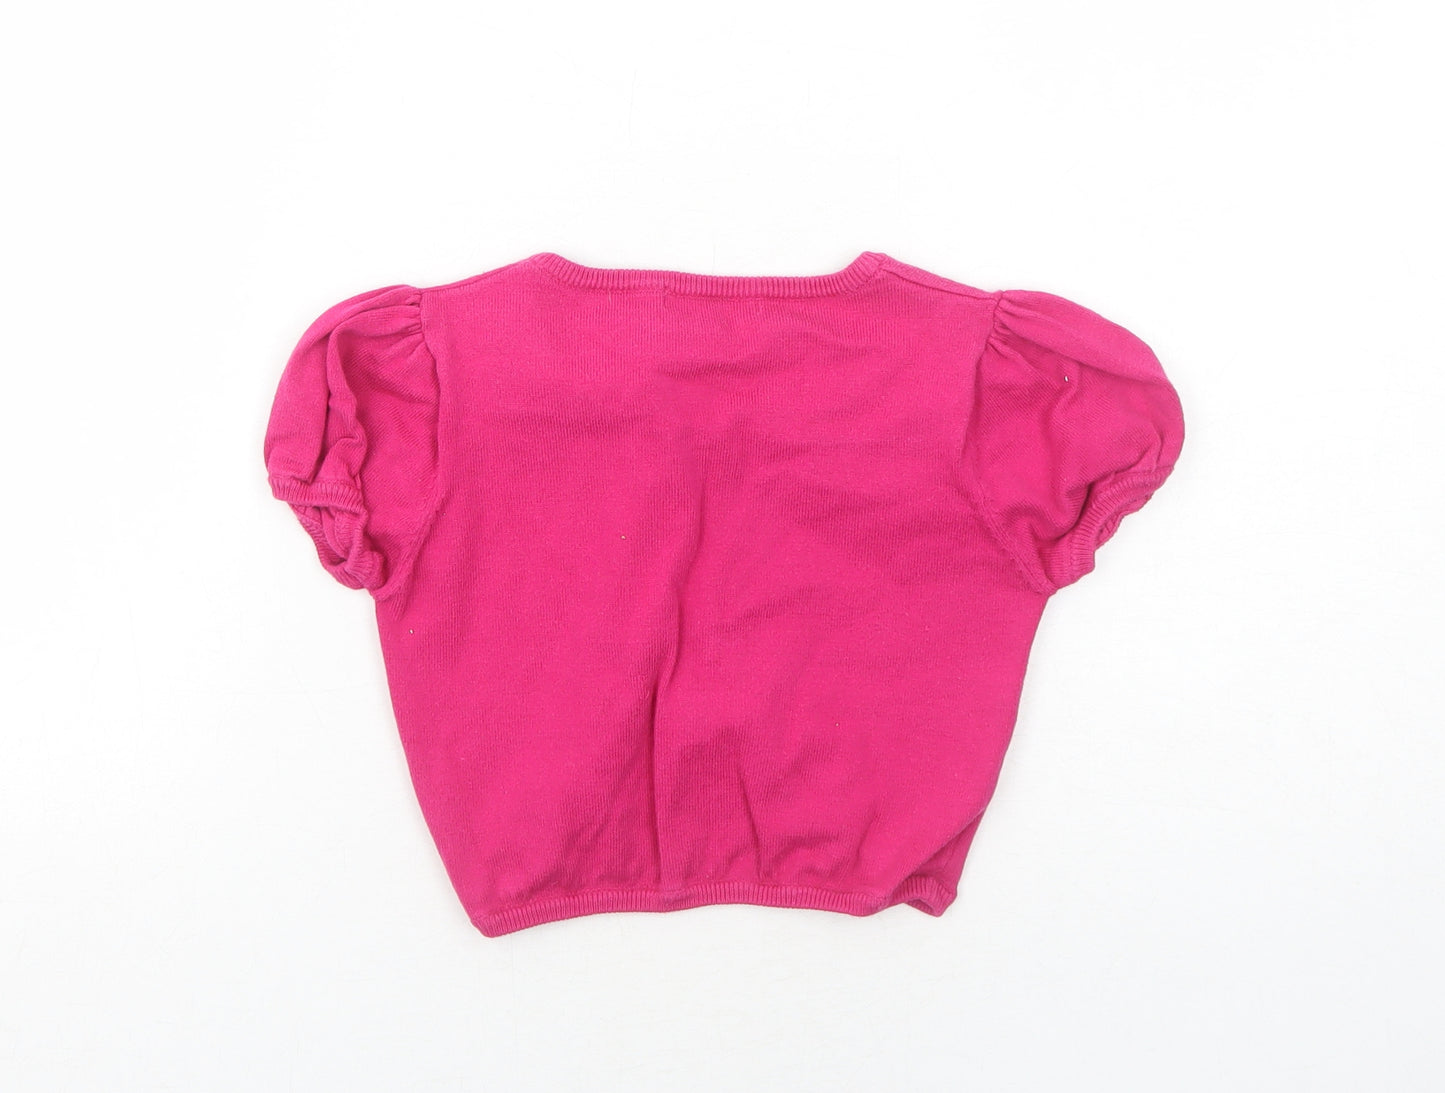 Blue Zoo Girls Pink Round Neck Cotton Shrug Jumper Size 9-10 Years Button